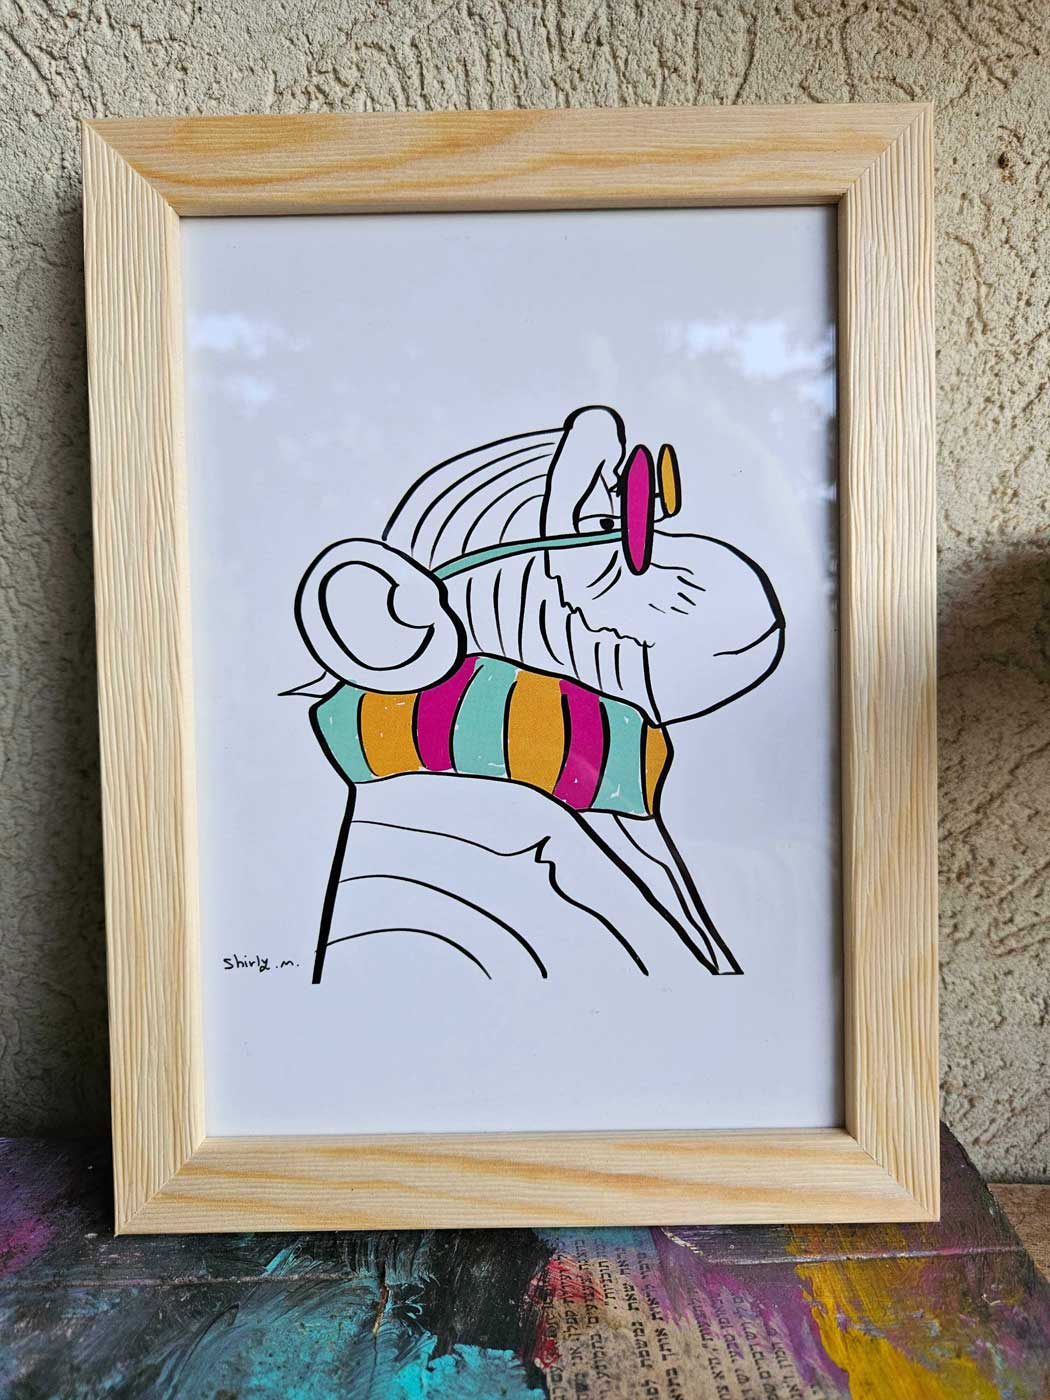 Monkey framed artwork